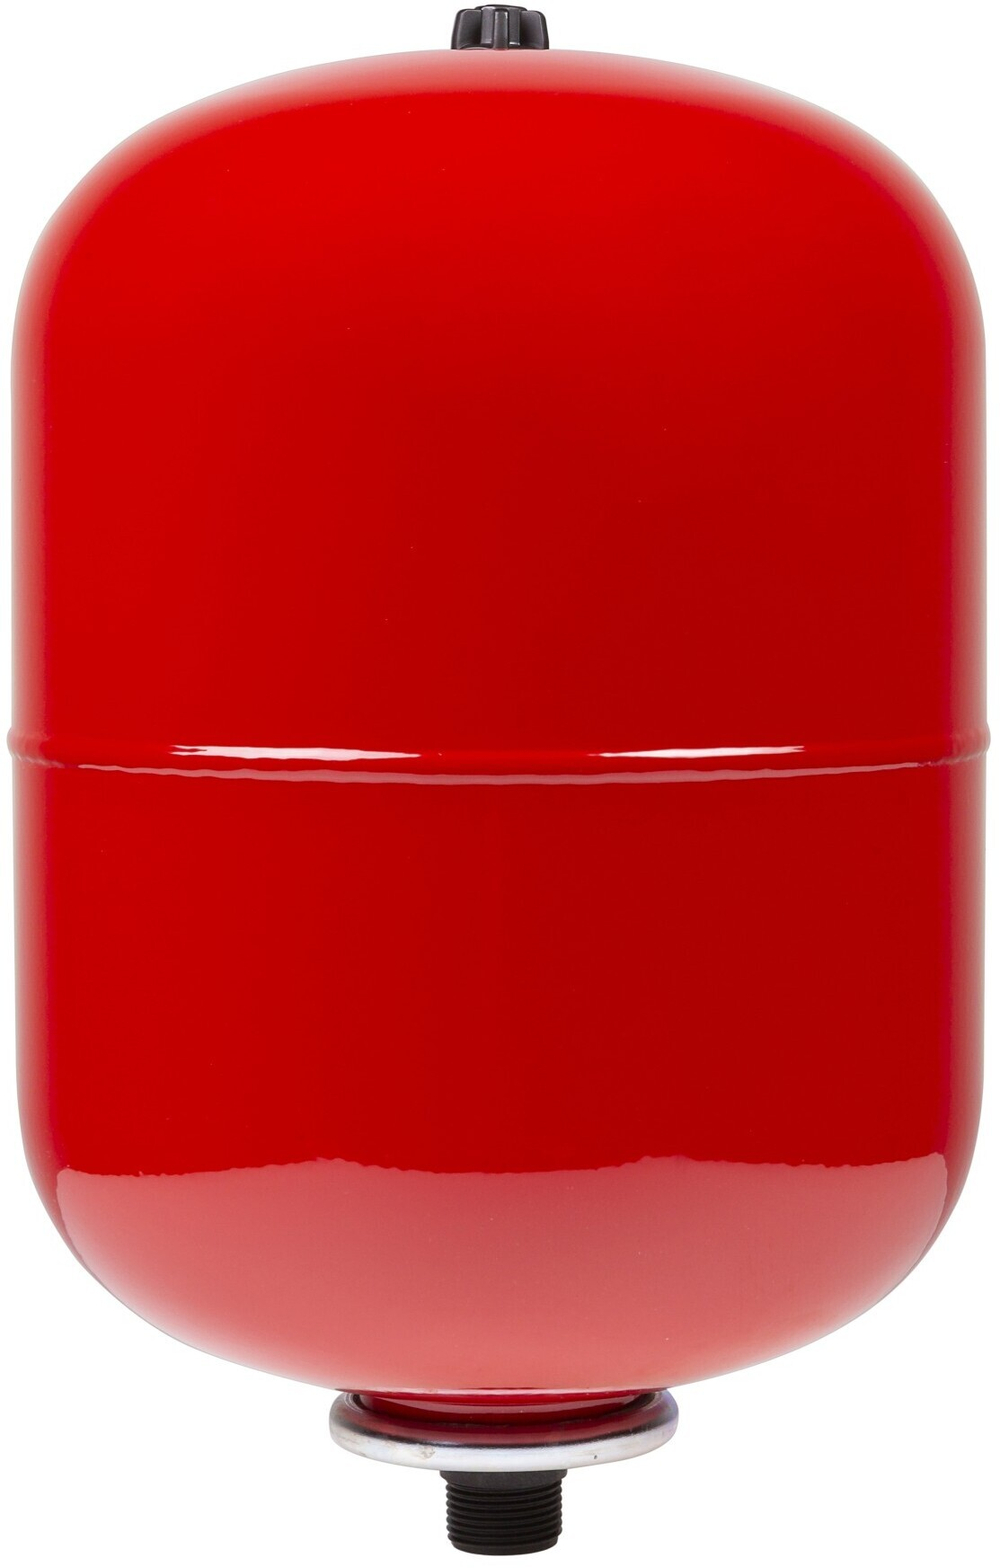 Бак расширительный на отопление 6л (цвет красный) 1" GROSSETO